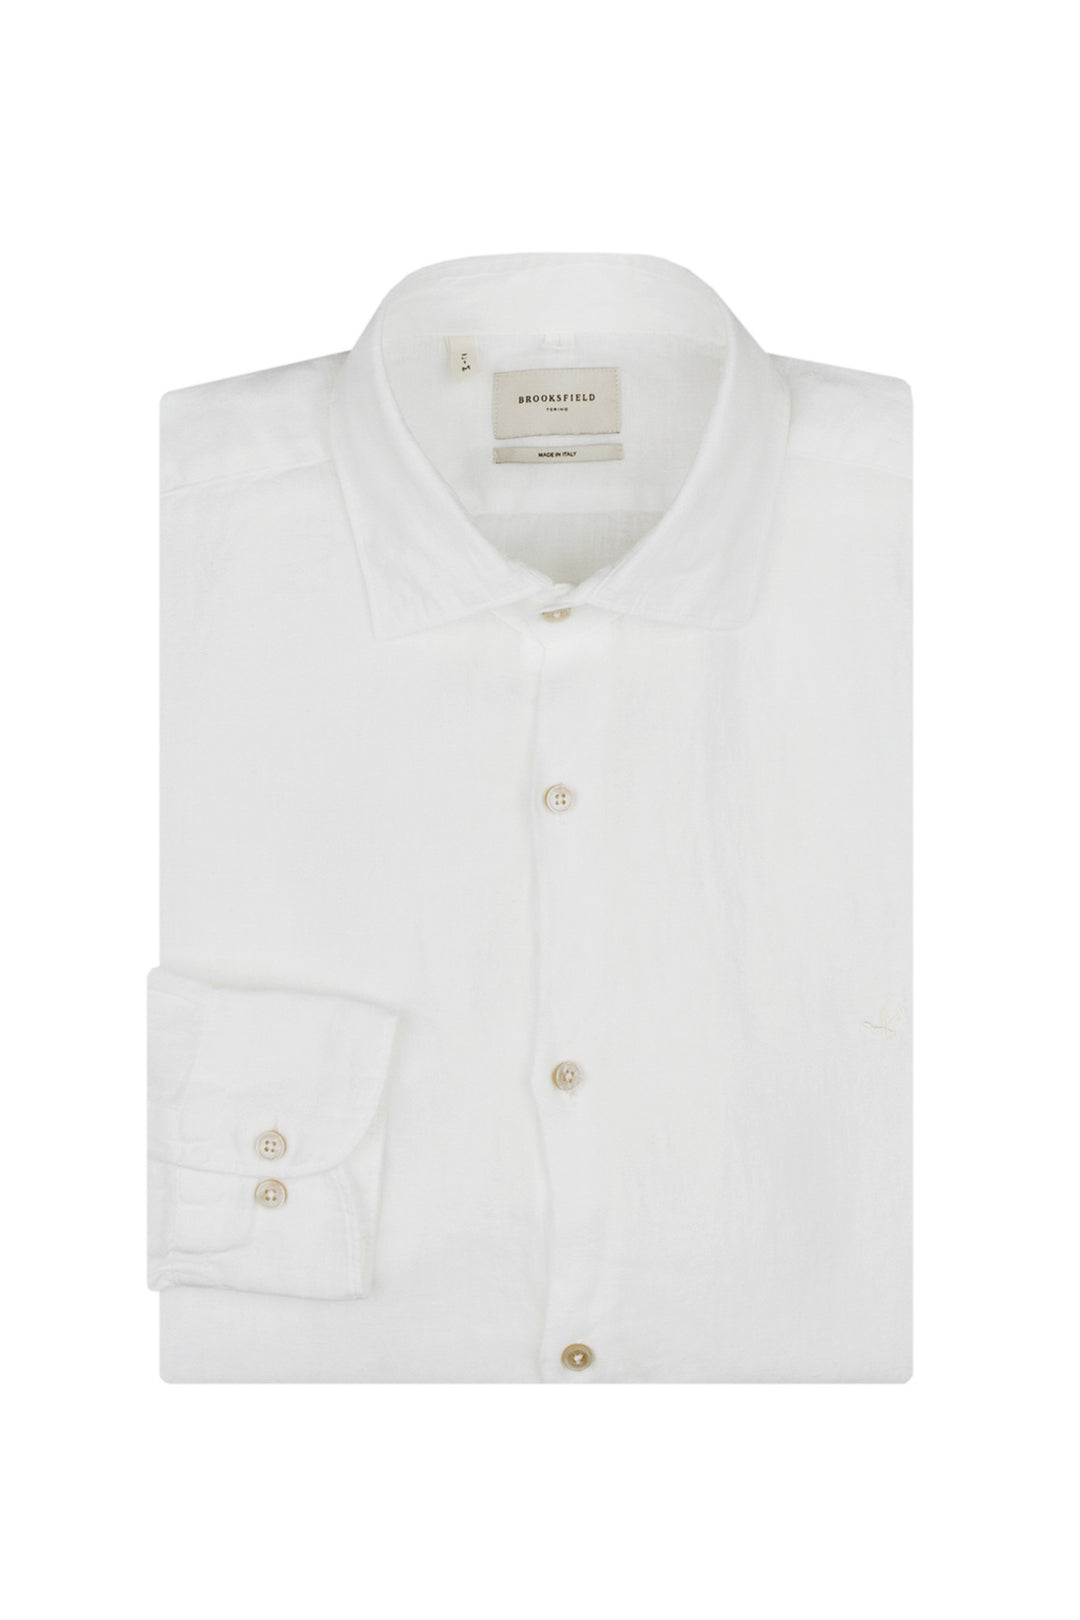 Brooksfield Camicia slim bianca in lino con collo francese - Mancinelli 1954